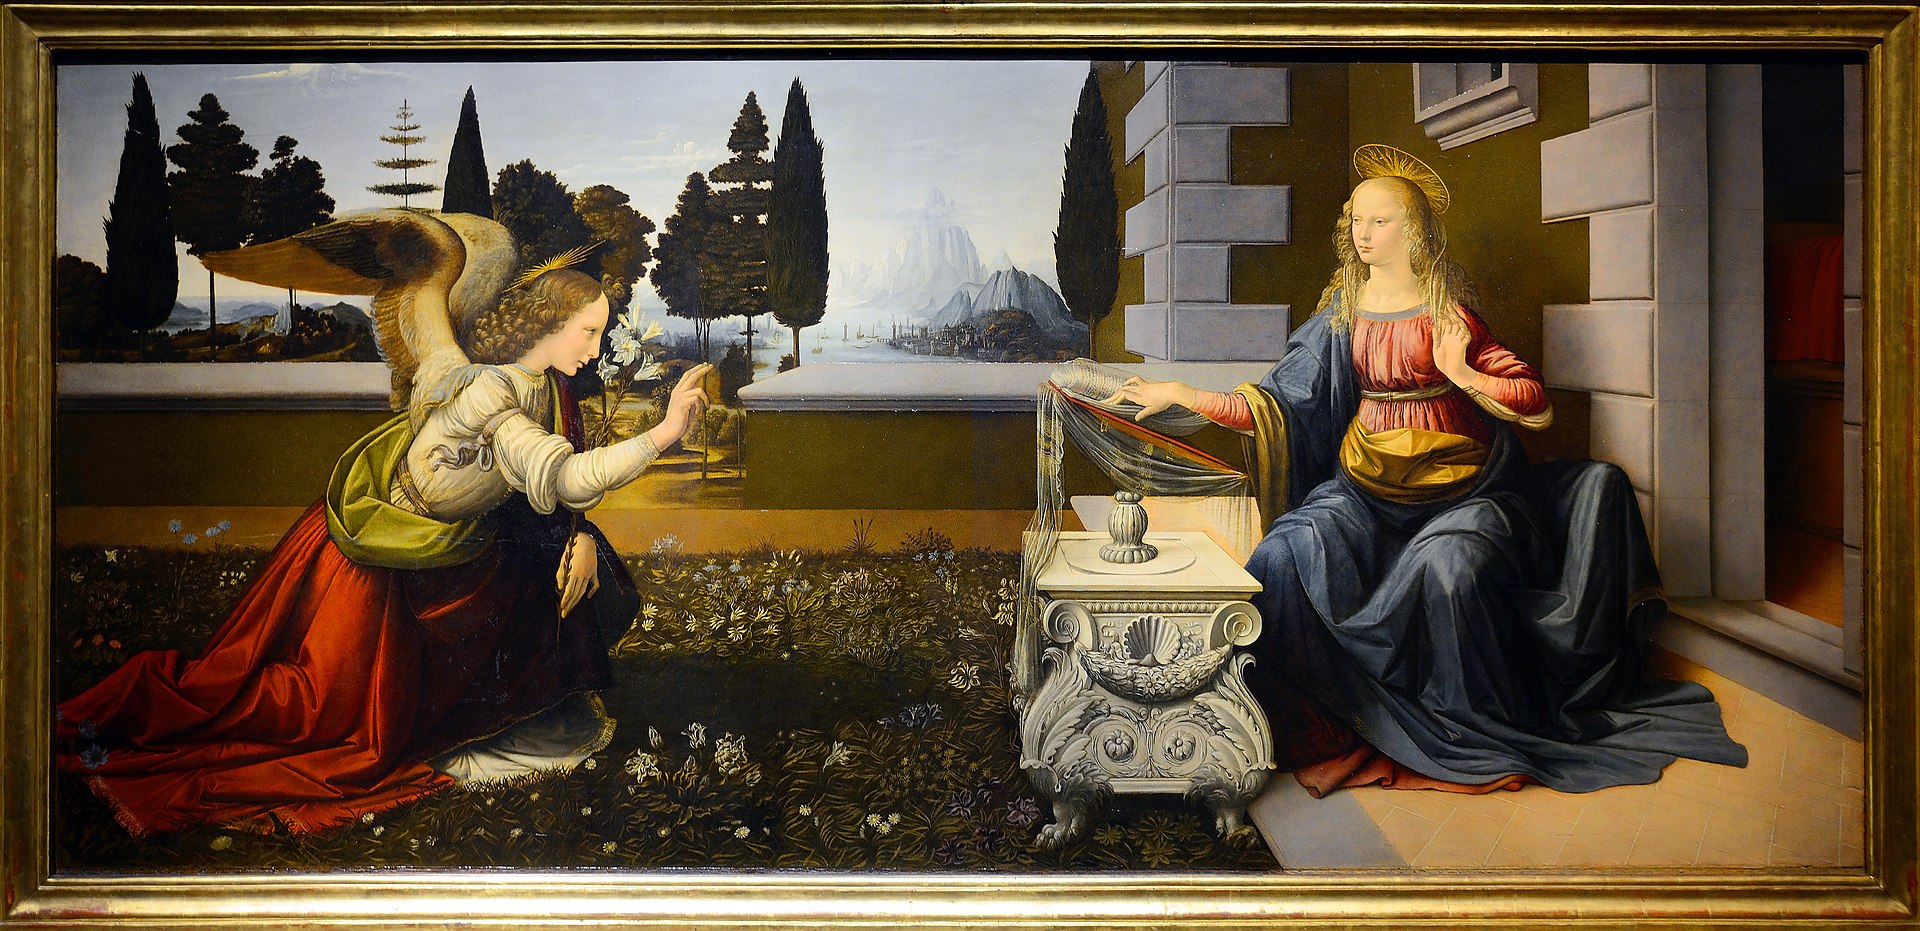 L'Annunciazione di Leonardo, oggi custodita nella Galleria degli Uffizi di Firenze